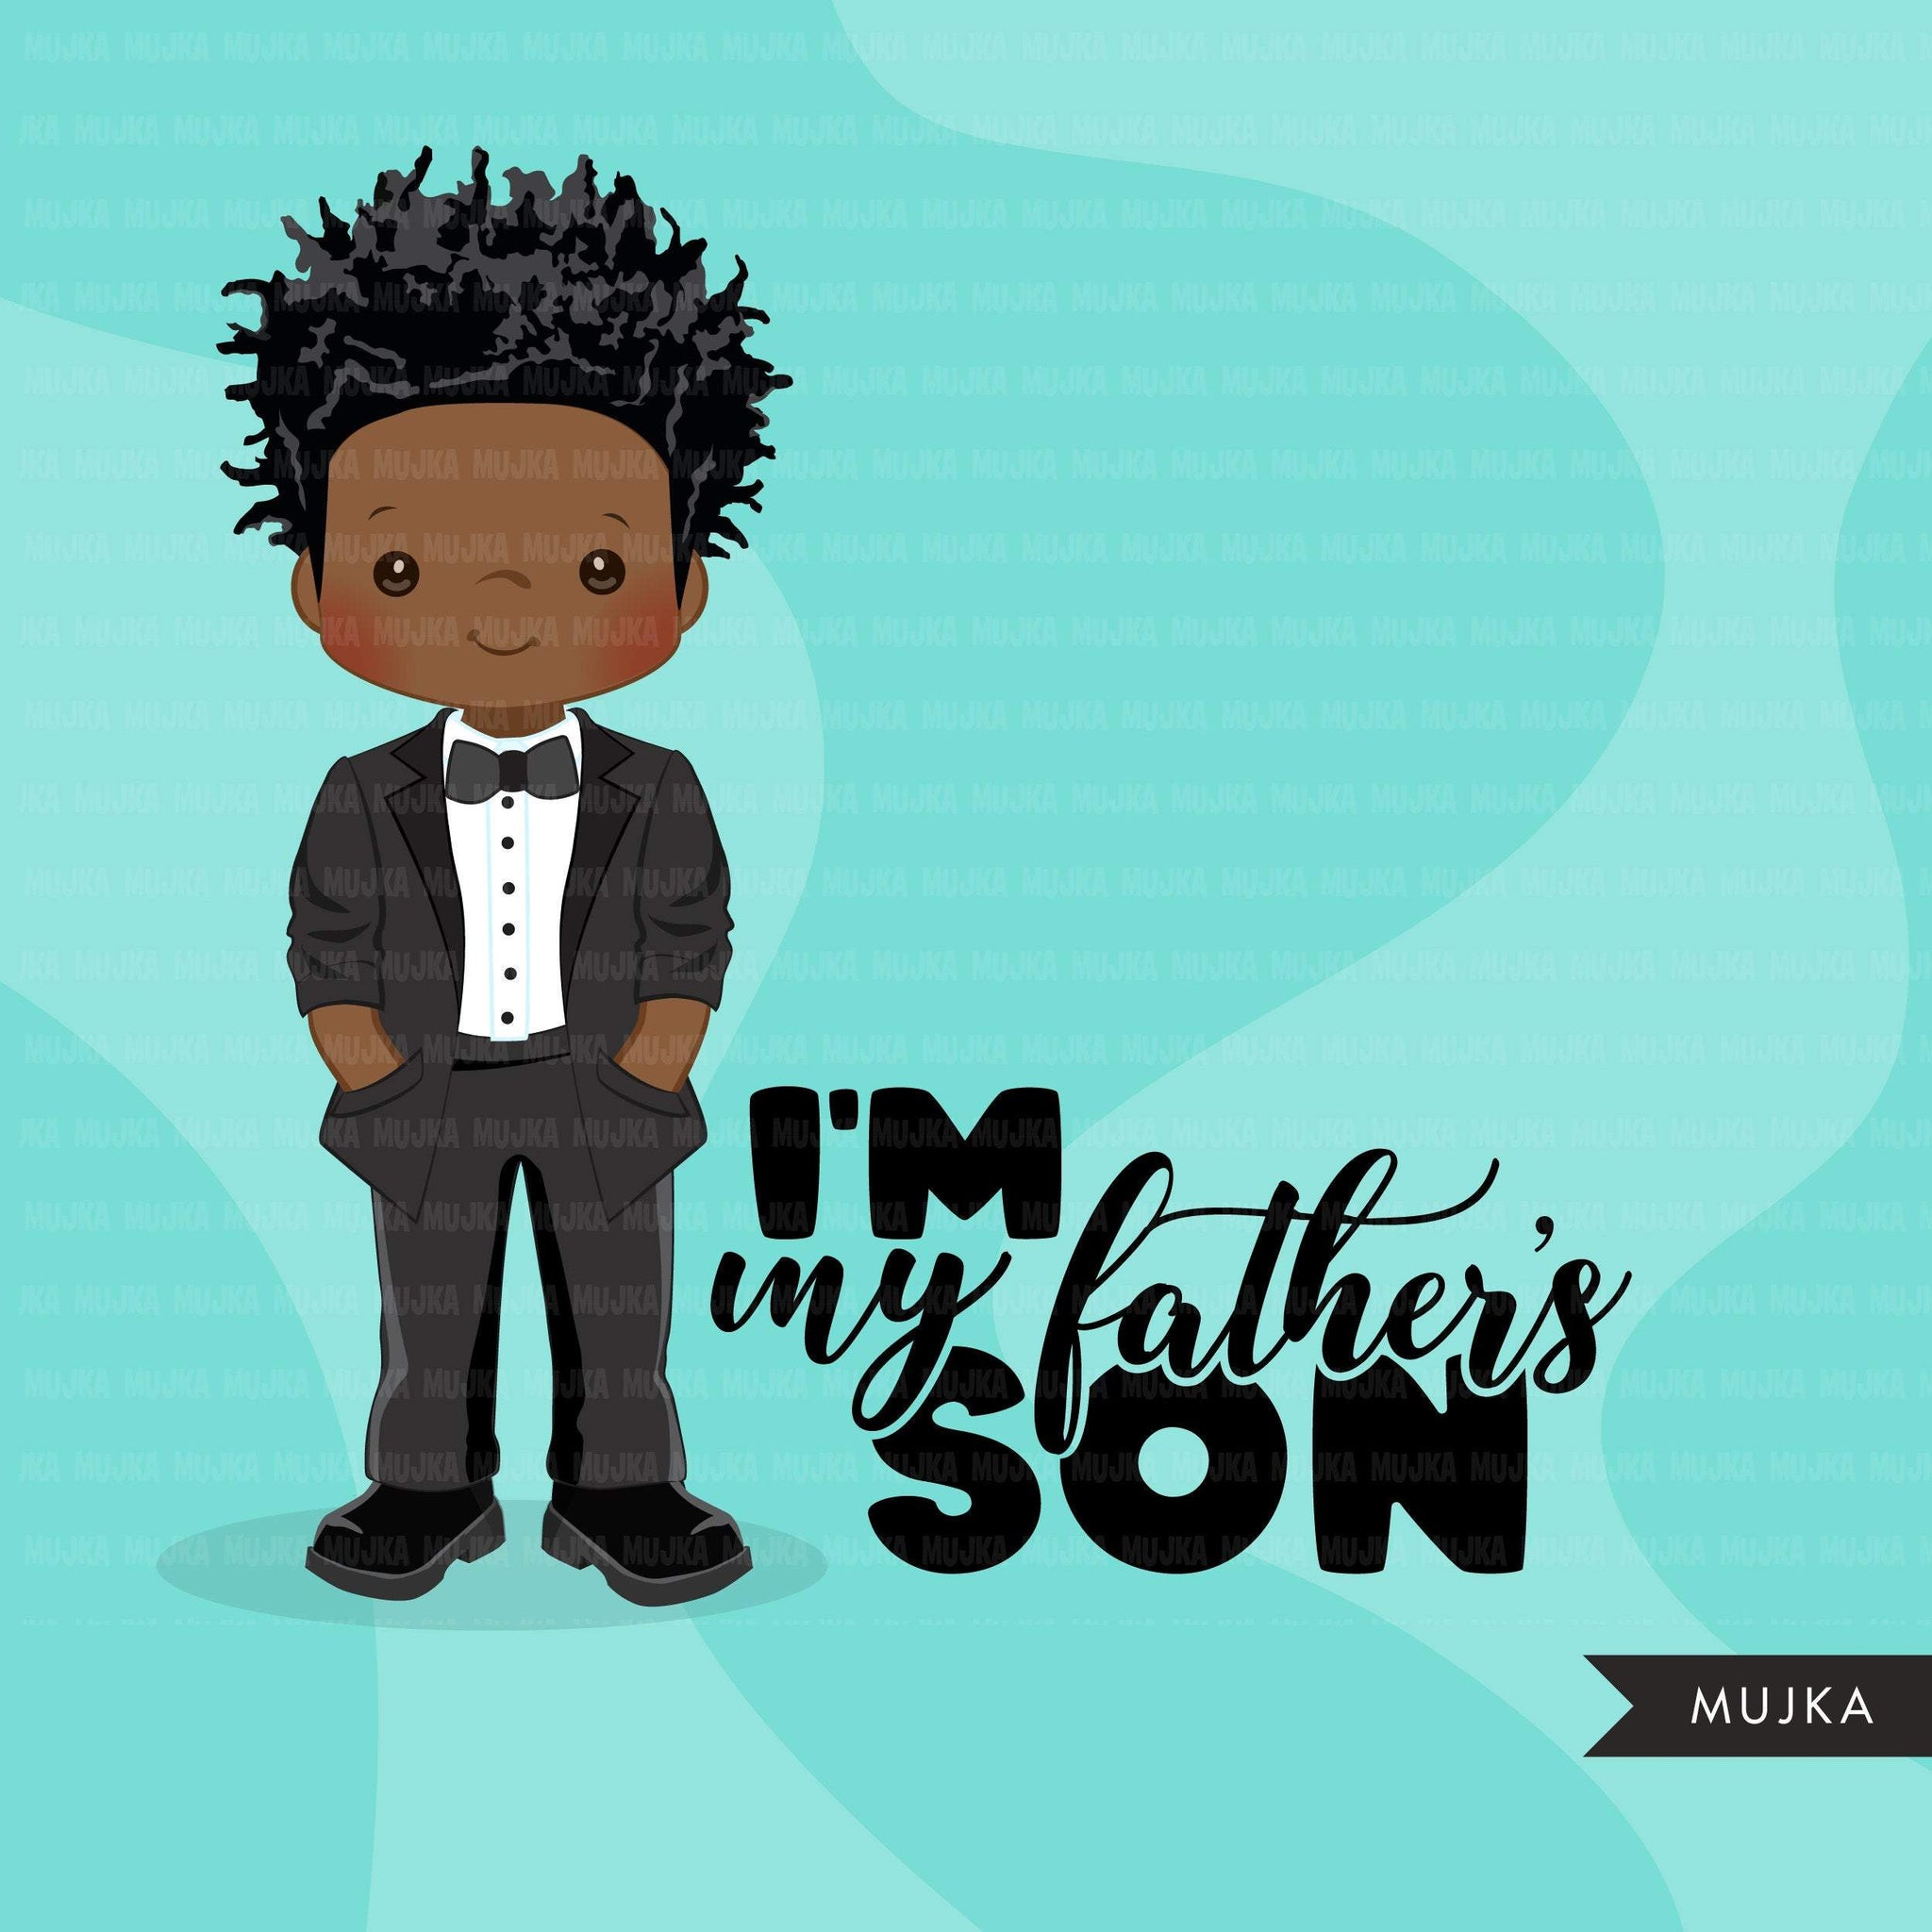 Clipart do Dia dos Pais, menino negro com smoking, citação de filho do meu pai, gráficos do pai, uso comercial PNG clip art